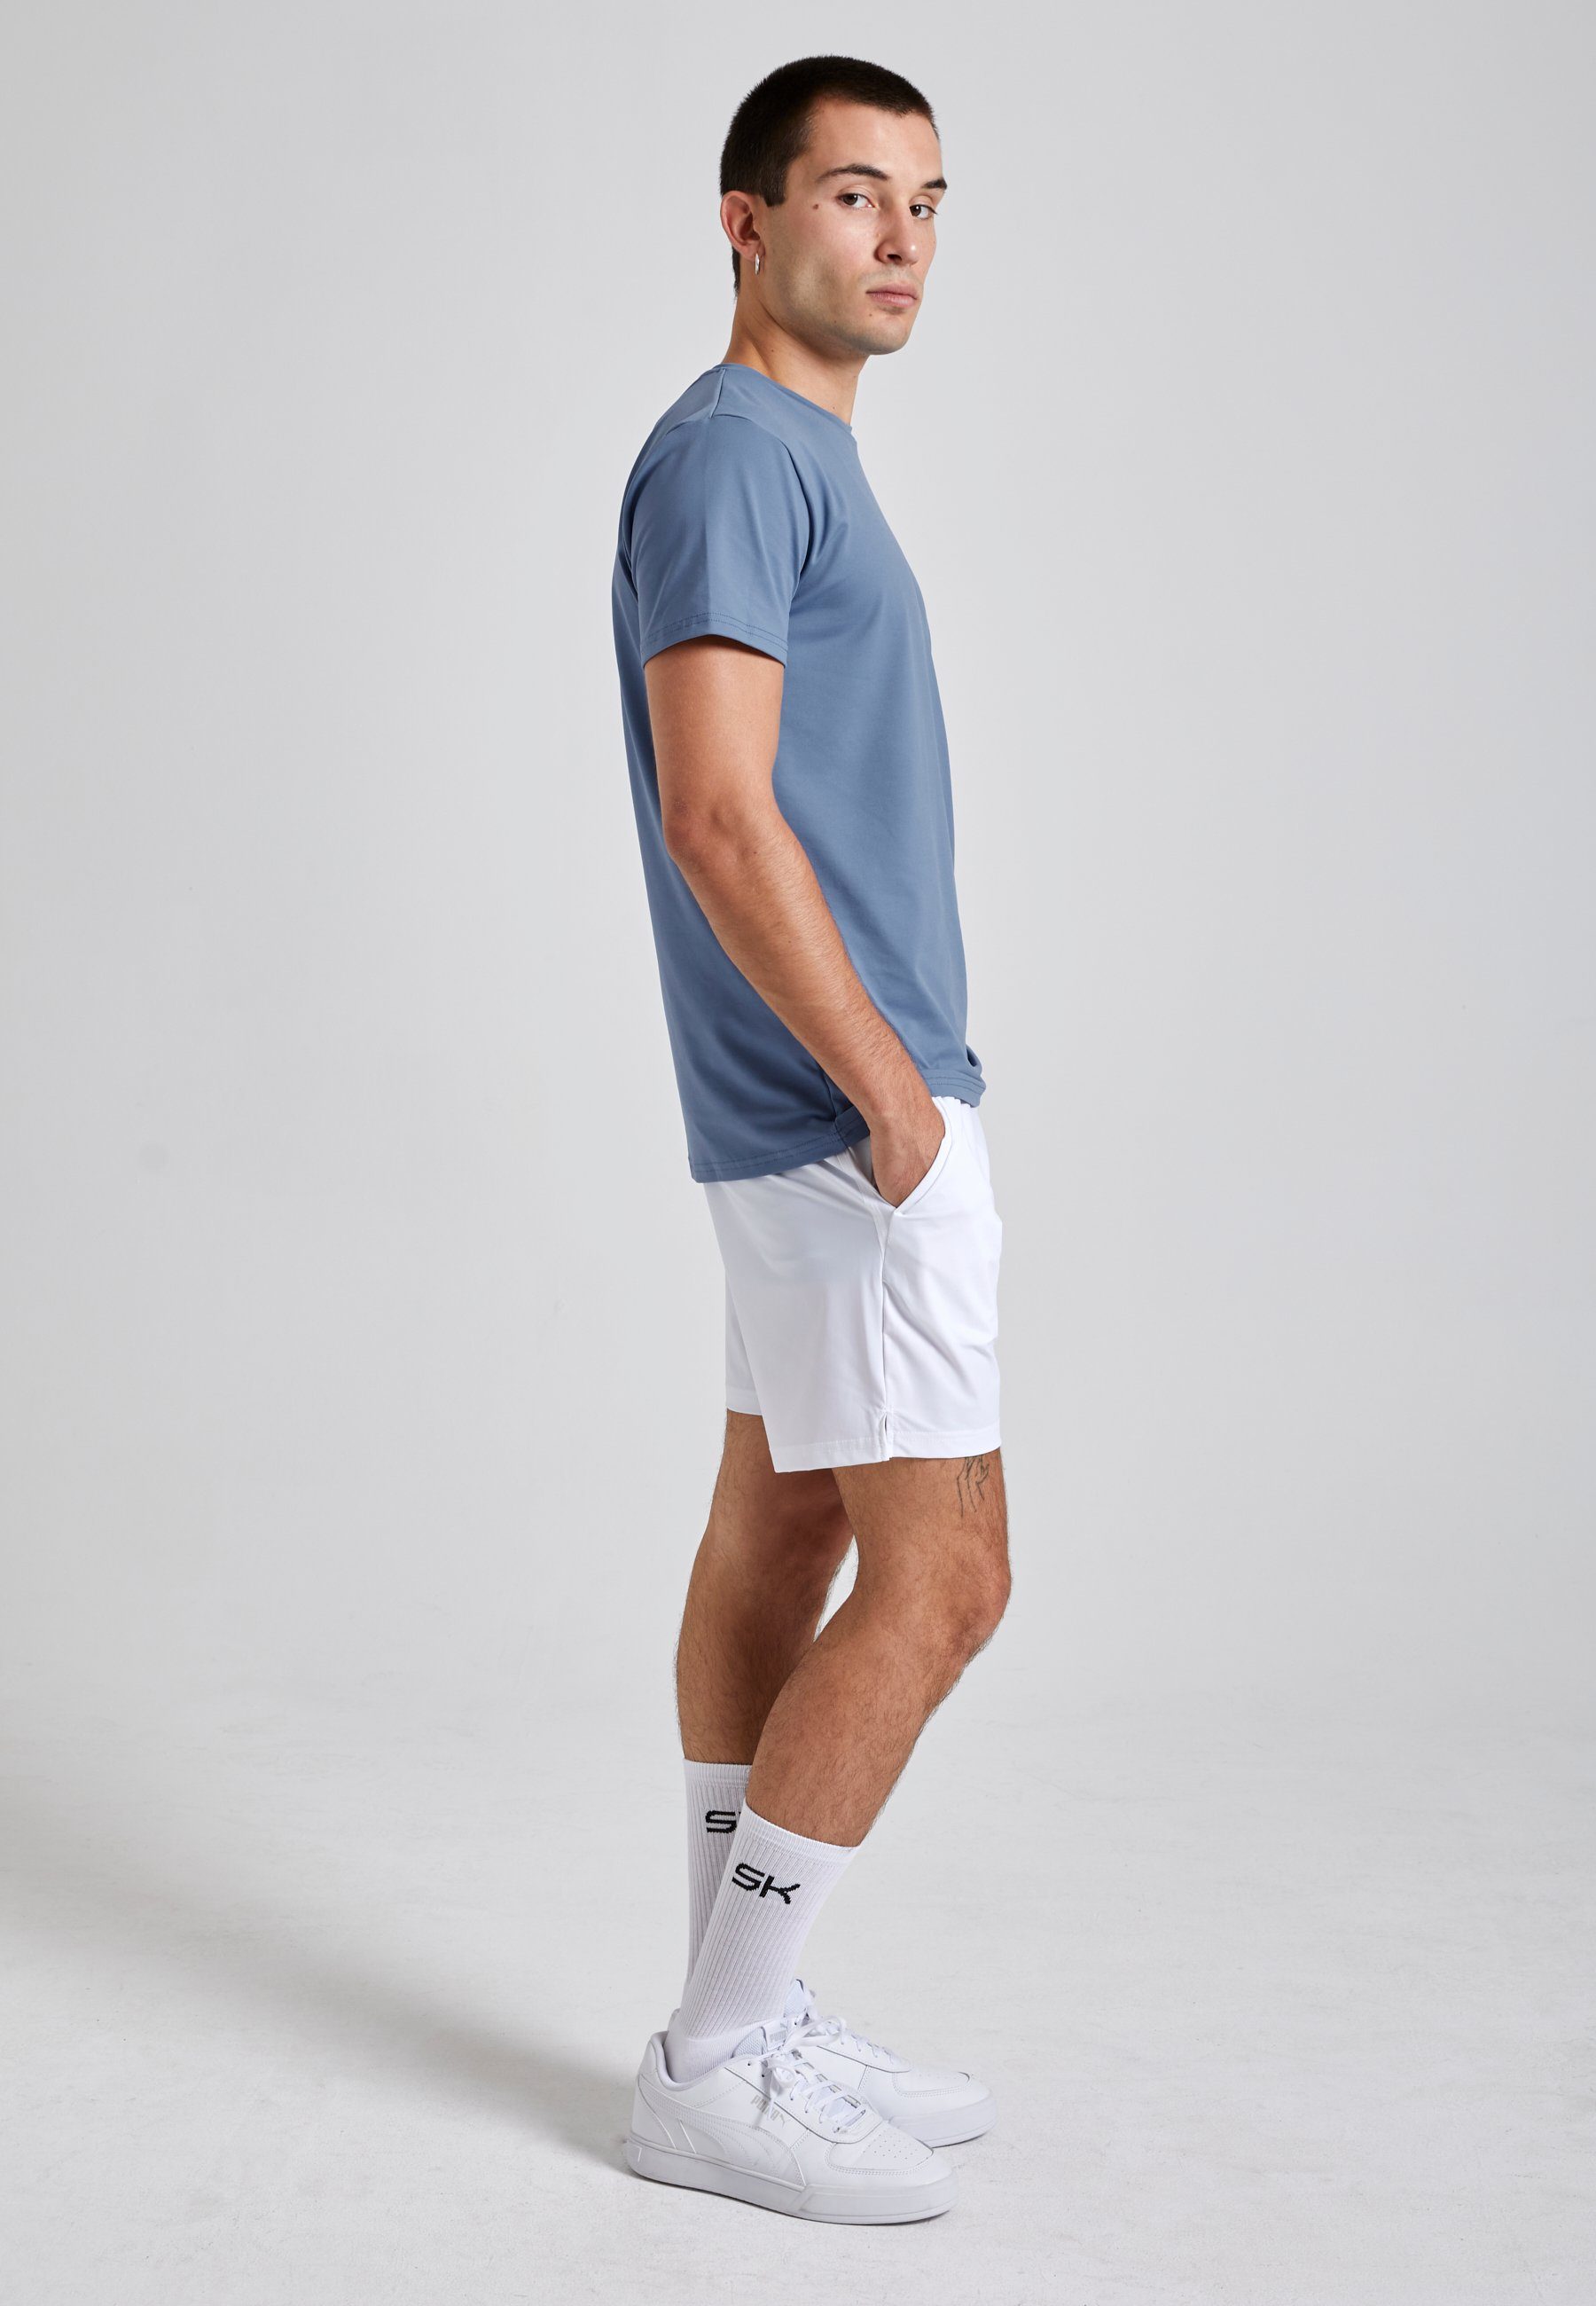 Funktionsshirt T-Shirt Jungen blau SPORTKIND Herren Rundhals grau & Tennis